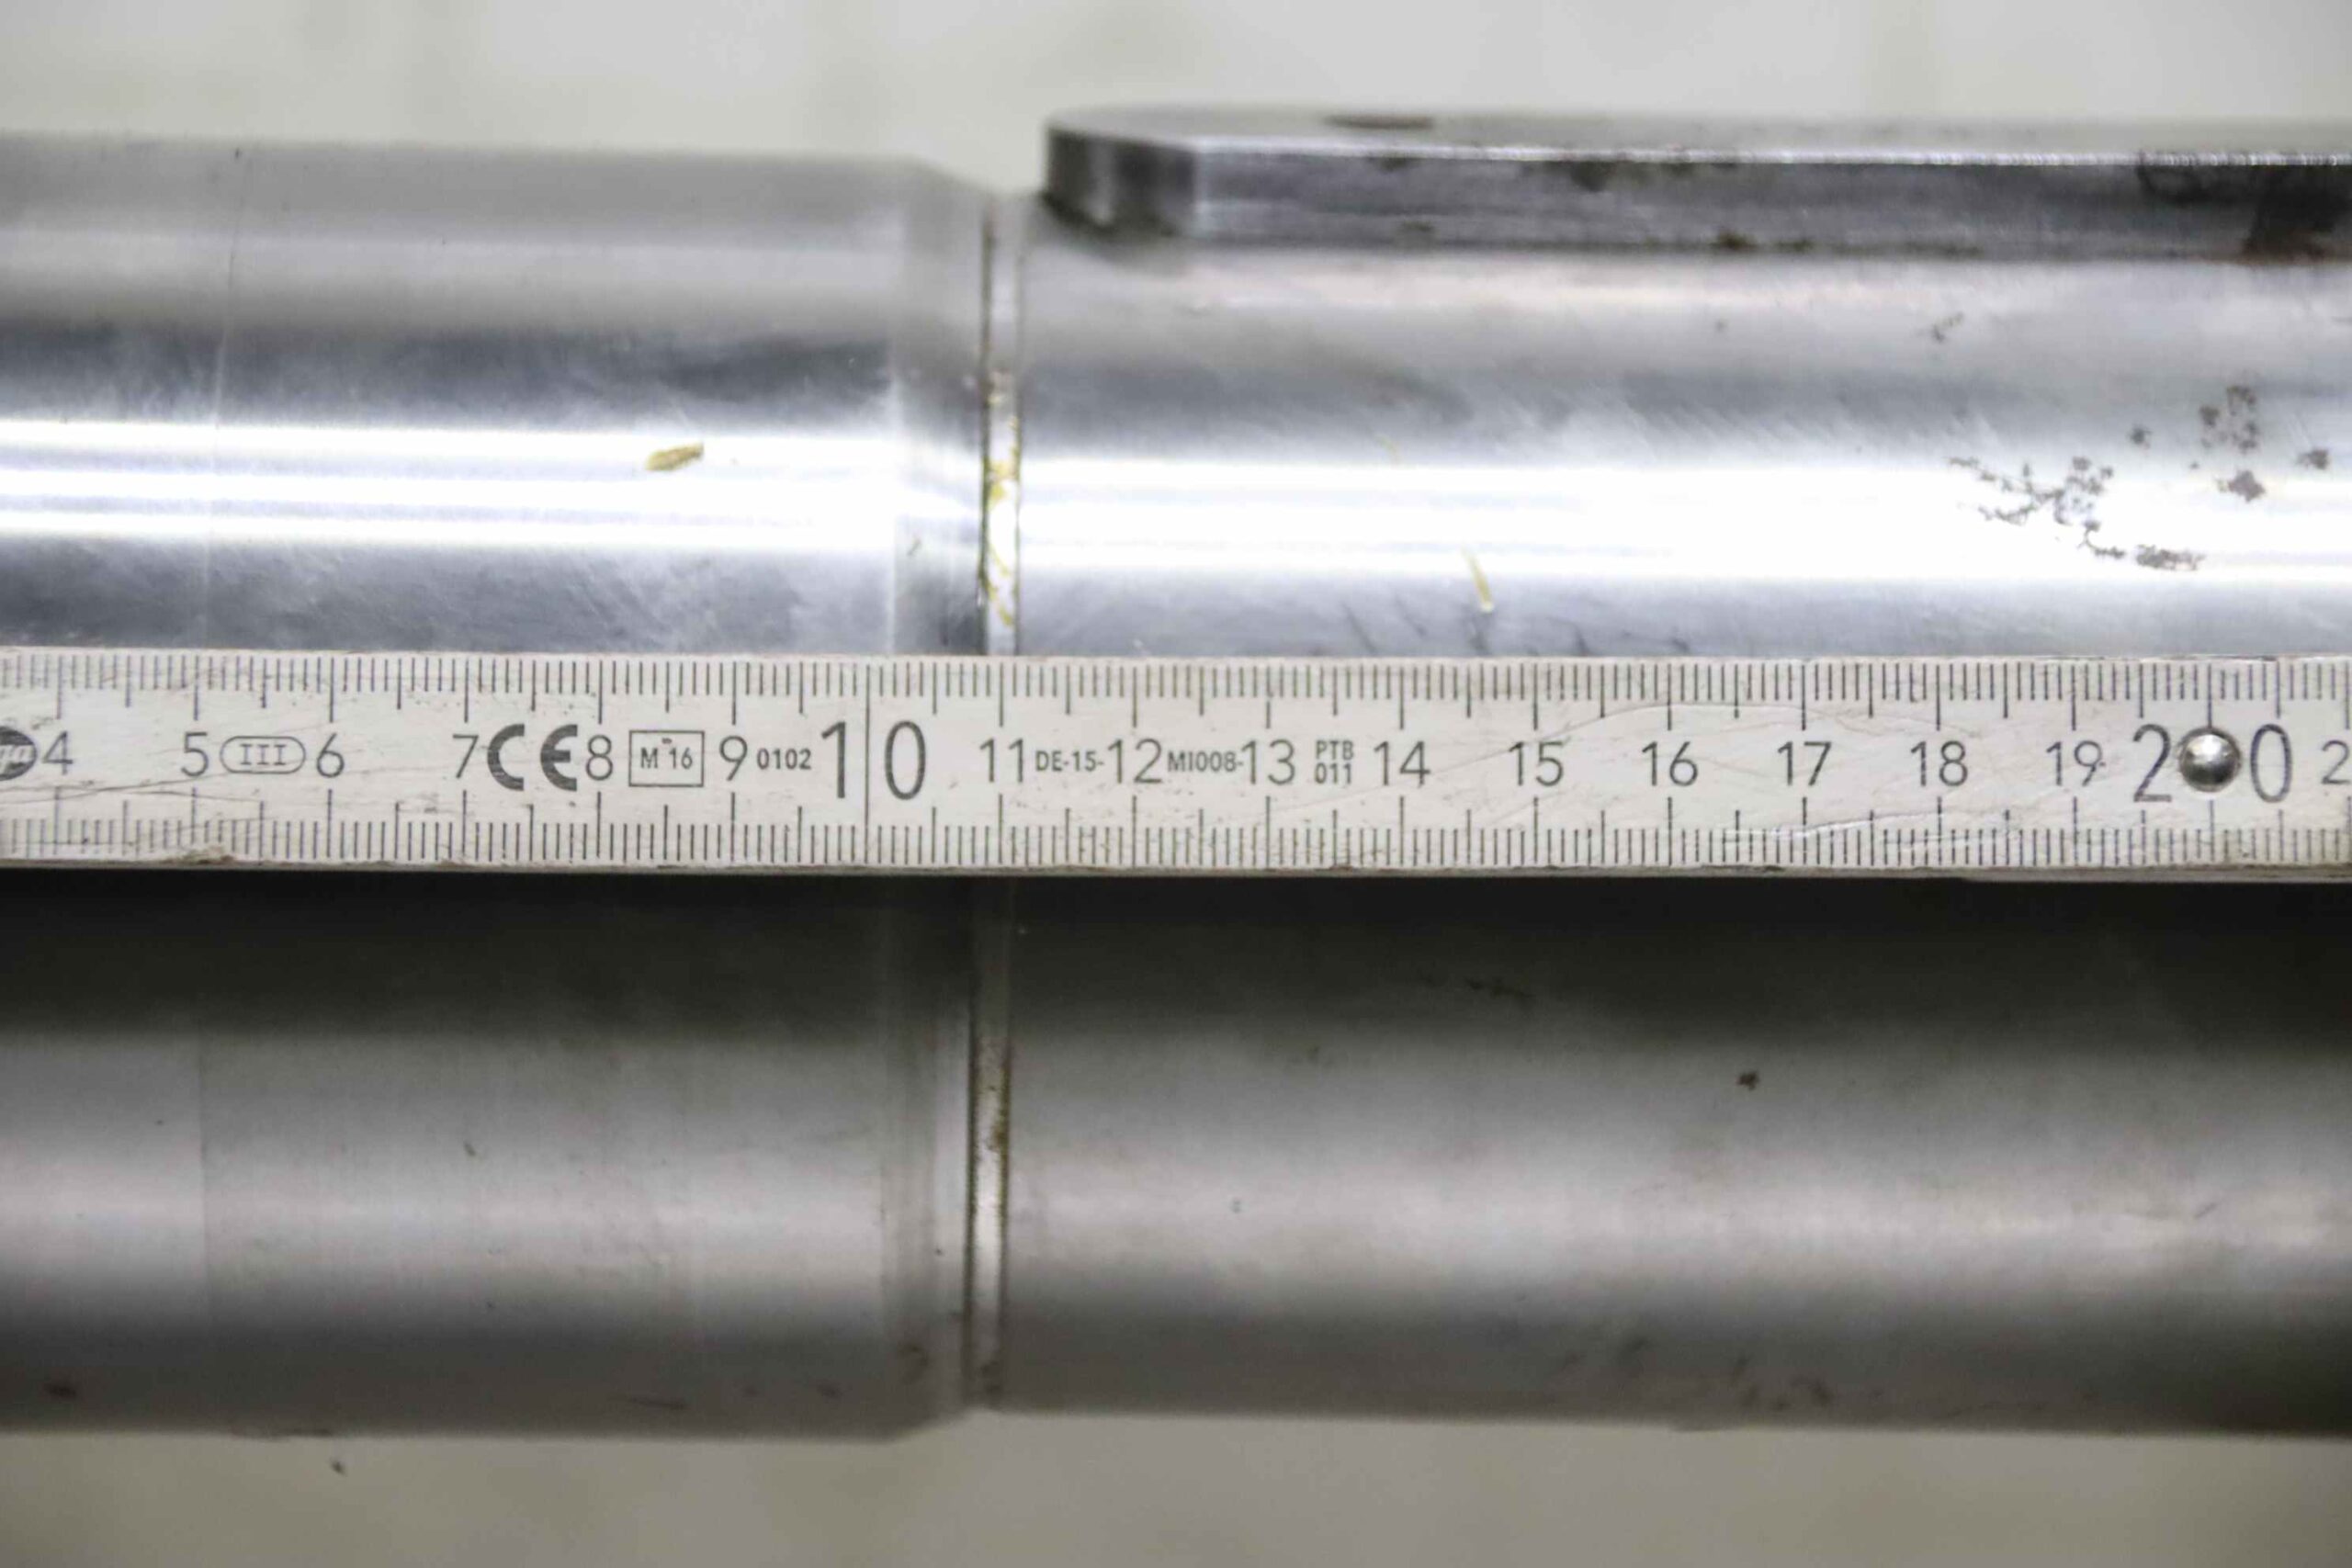 CMW - Vorgebohrte Scheibe - Stahl - Einfachverzahnung - 10B1 - 53 Zähne -  15,8 mm Abstand mit 20 mm Bohrung. zum besten Preis – CMW